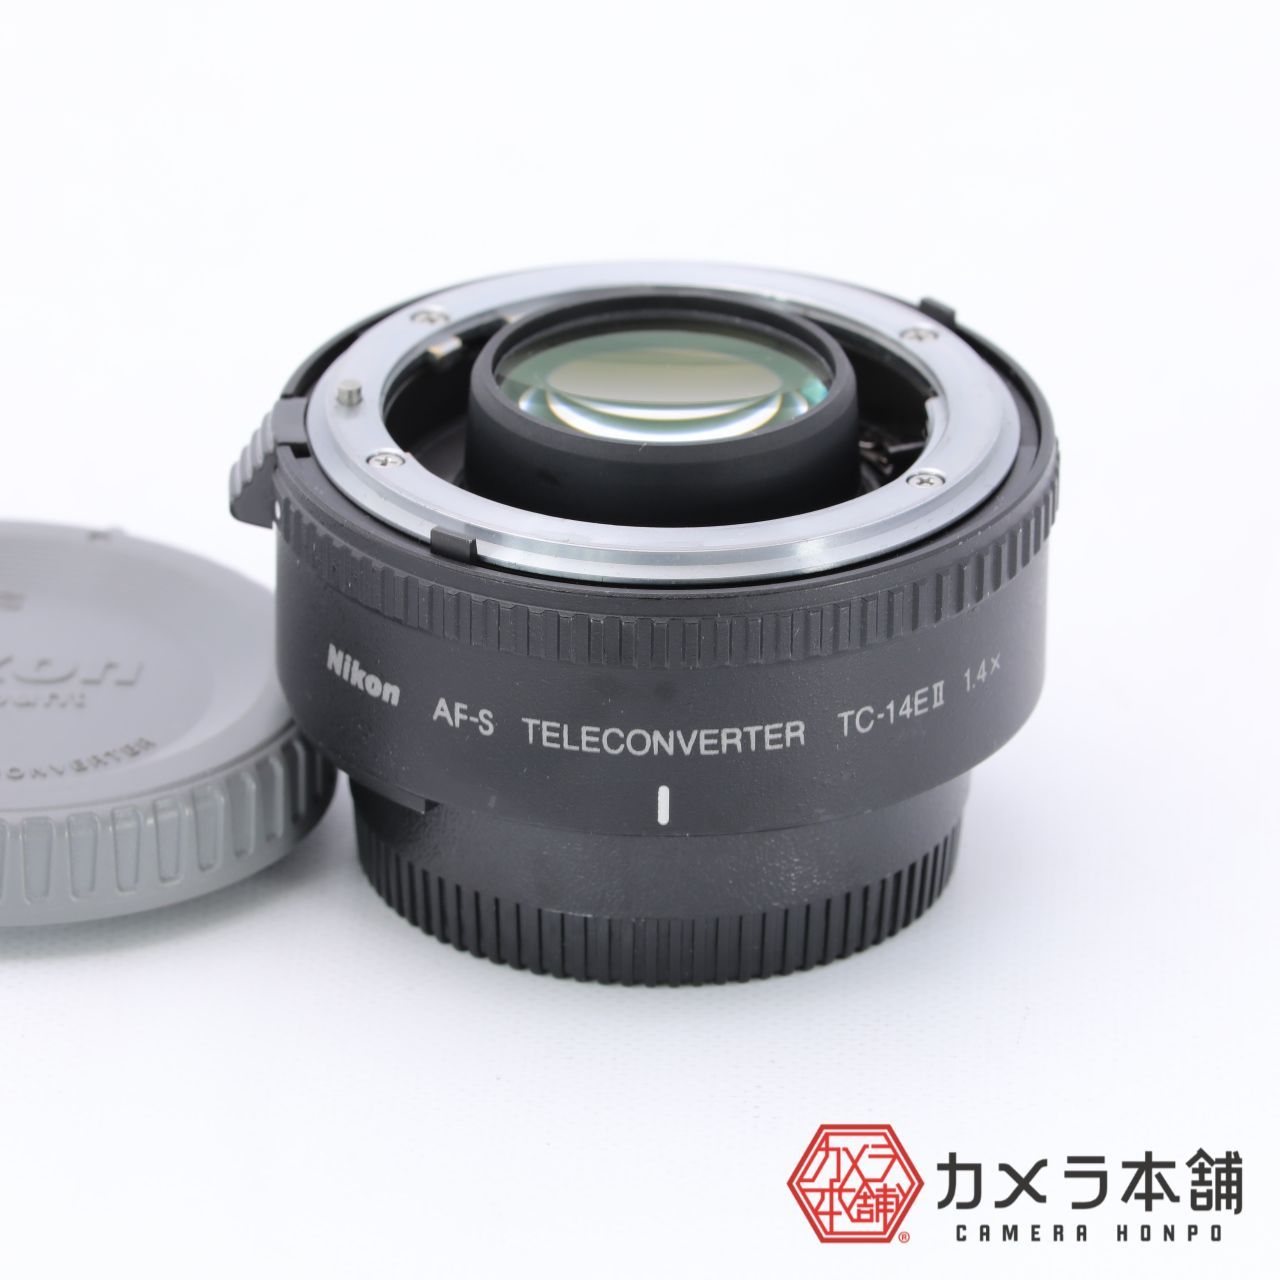 Nikon ニコン テレコンバーター AF-S TC-14E II - メルカリ